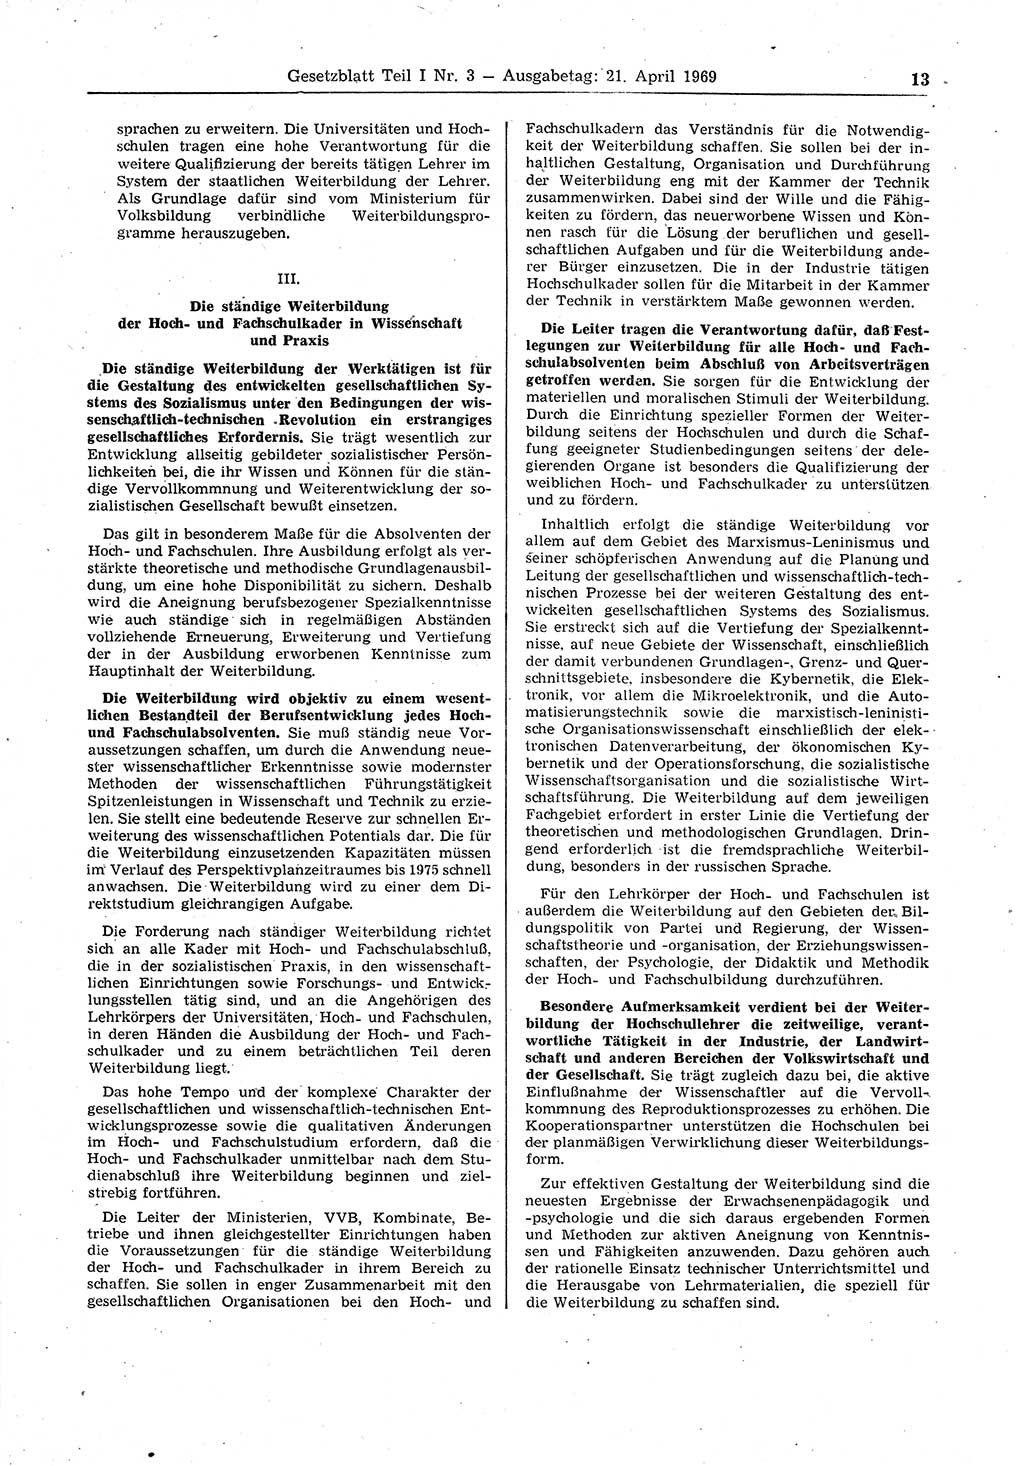 Gesetzblatt (GBl.) der Deutschen Demokratischen Republik (DDR) Teil Ⅰ 1969, Seite 13 (GBl. DDR Ⅰ 1969, S. 13)